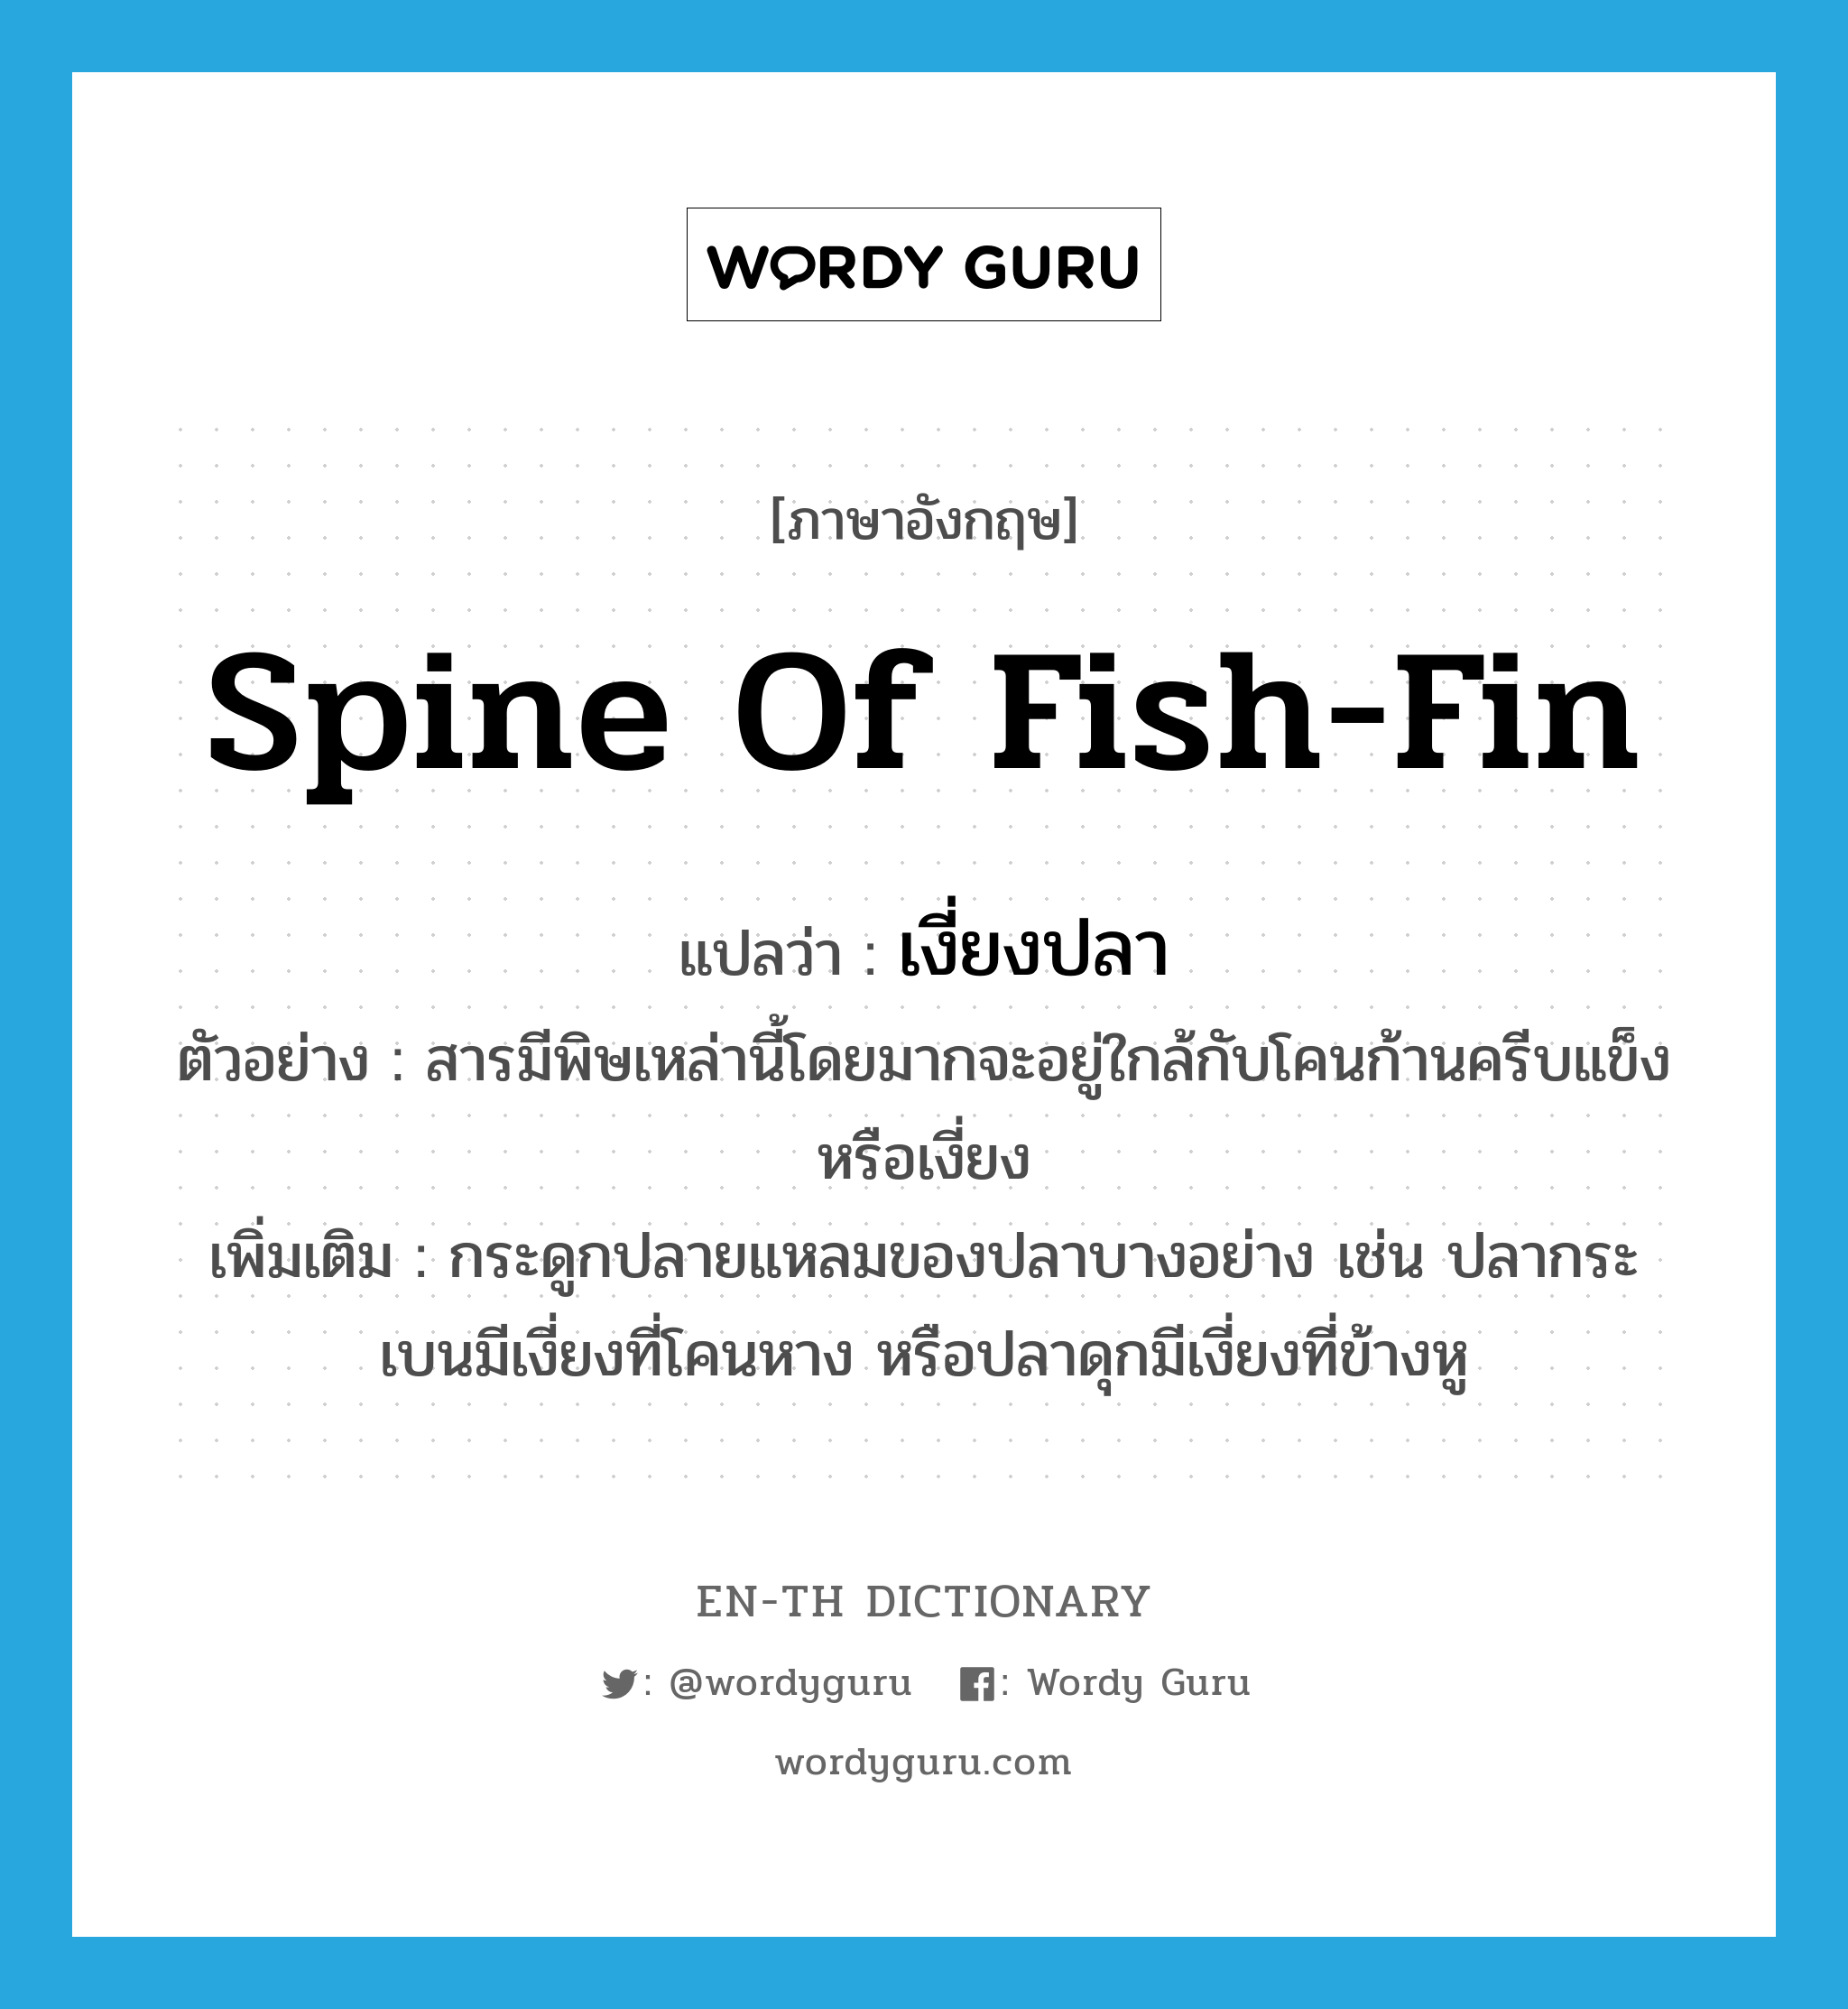 เงี่ยงปลา ภาษาอังกฤษ?, คำศัพท์ภาษาอังกฤษ เงี่ยงปลา แปลว่า spine of fish-fin ประเภท N ตัวอย่าง สารมีพิษเหล่านี้โดยมากจะอยู่ใกล้กับโคนก้านครีบแข็งหรือเงี่ยง เพิ่มเติม กระดูกปลายแหลมของปลาบางอย่าง เช่น ปลากระเบนมีเงี่ยงที่โคนหาง หรือปลาดุกมีเงี่ยงที่ข้างหู หมวด N